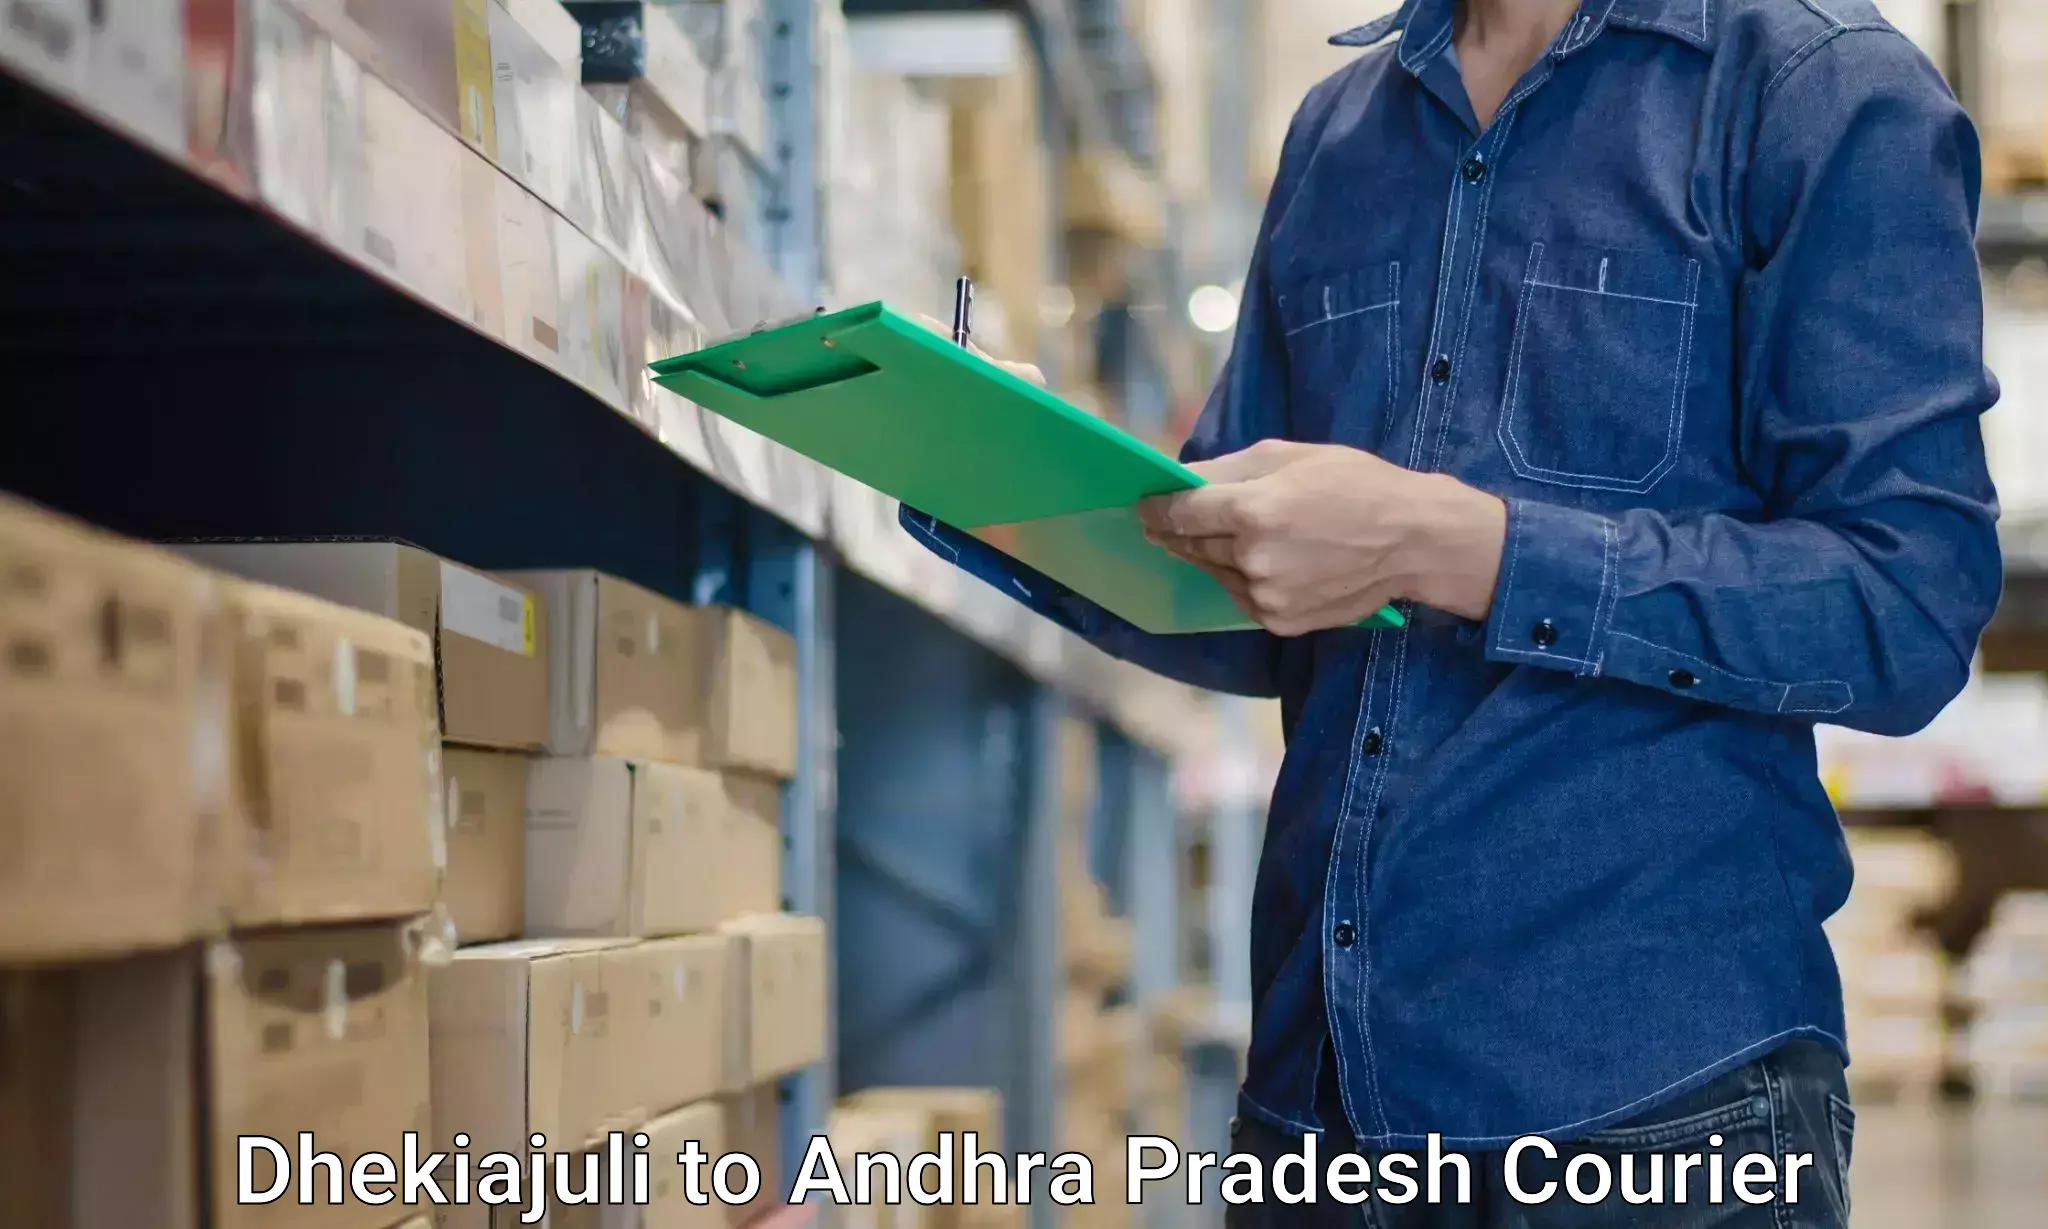 Furniture transport and storage Dhekiajuli to Andhra Pradesh